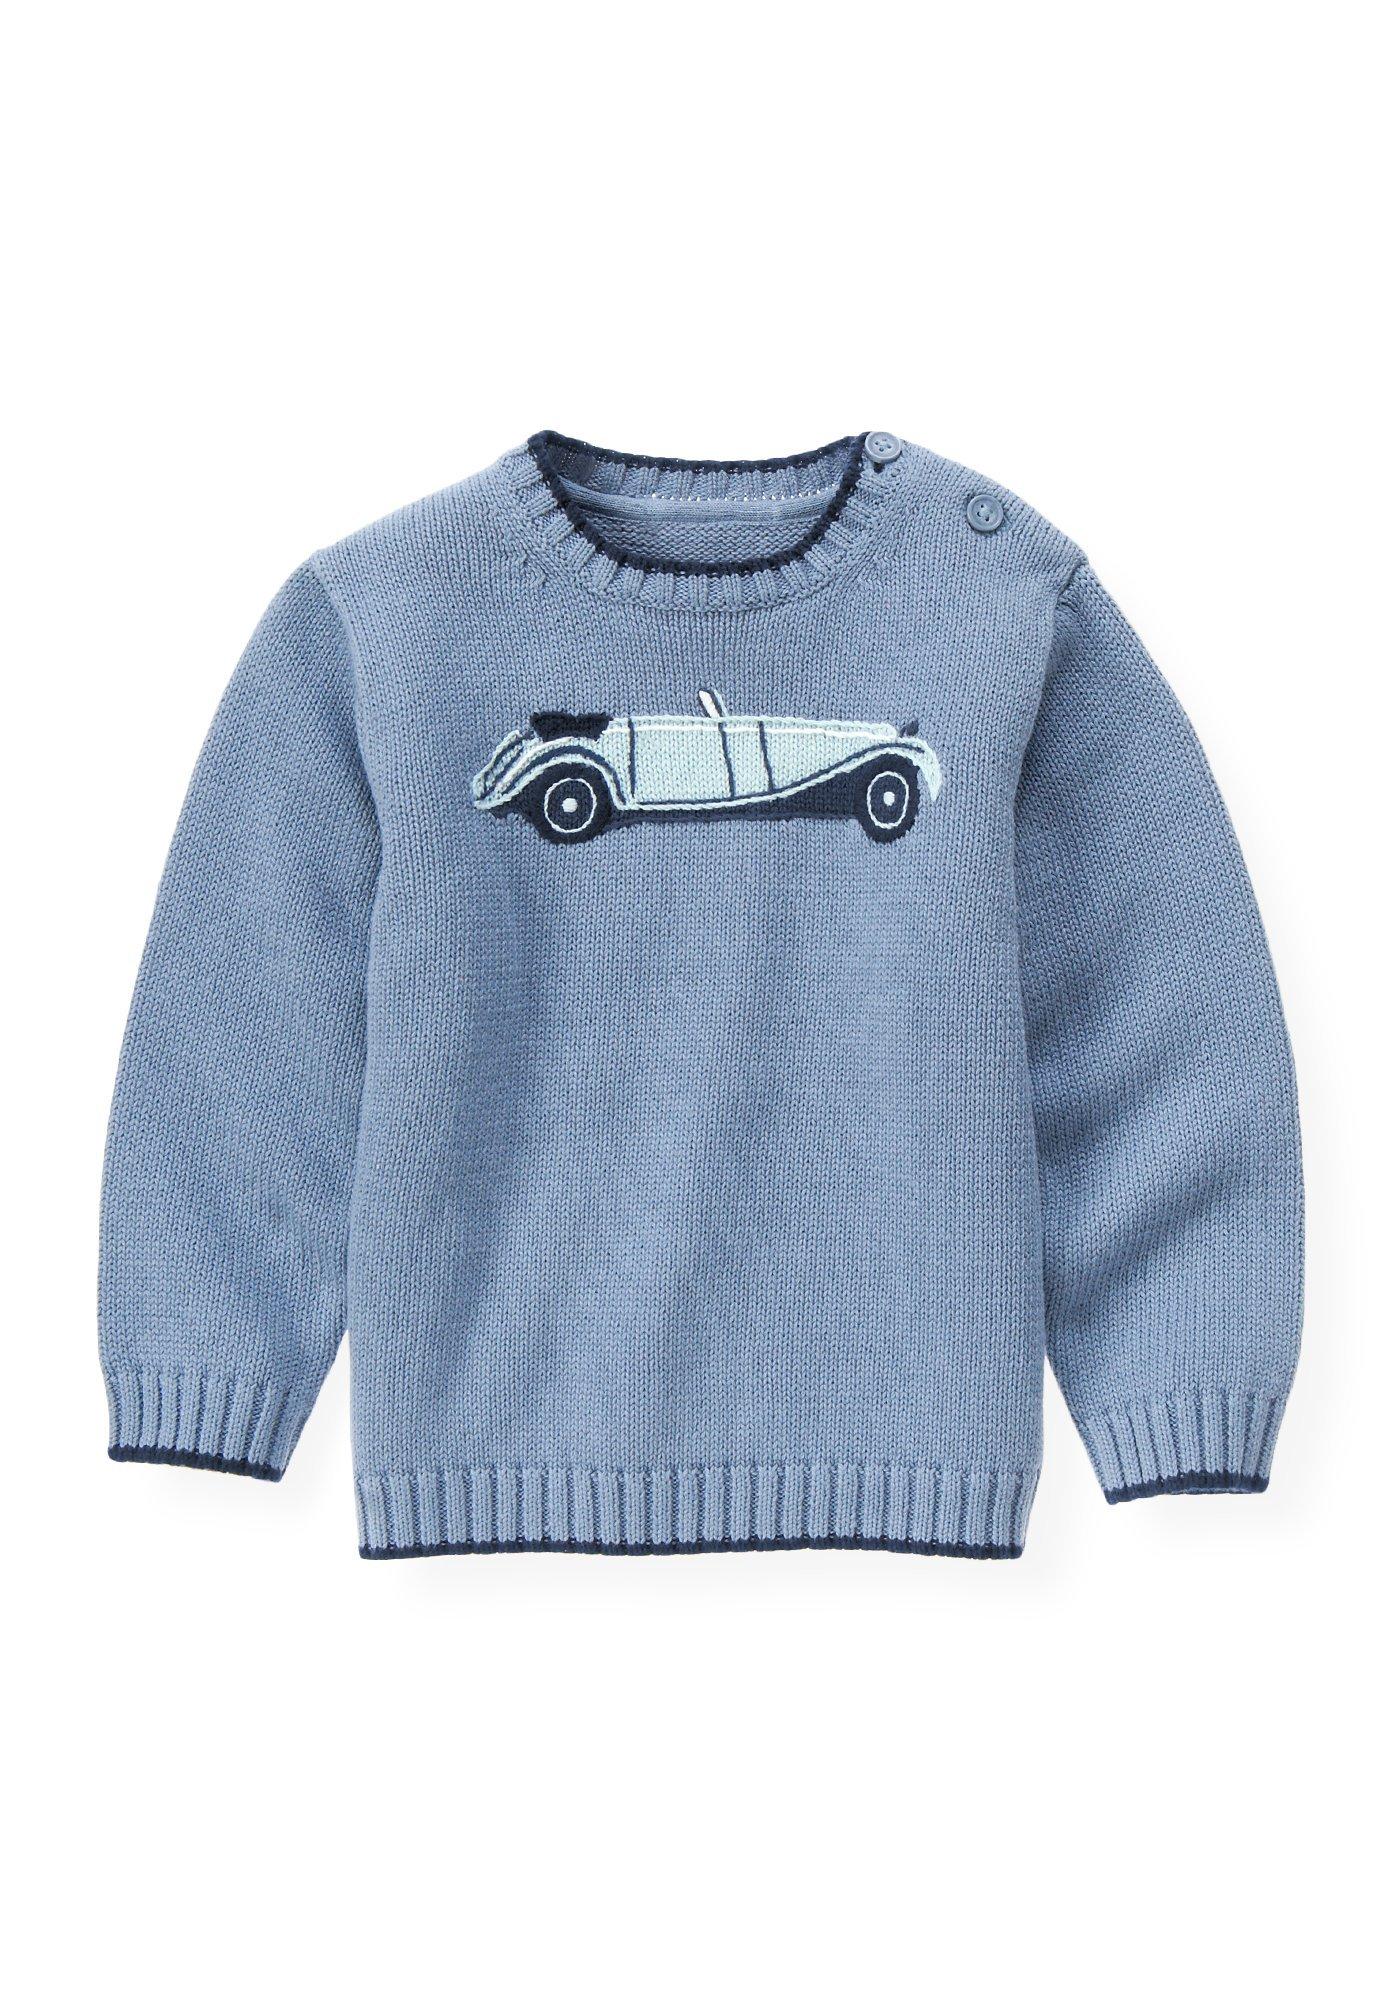 Vintage Car Sweater image number 0